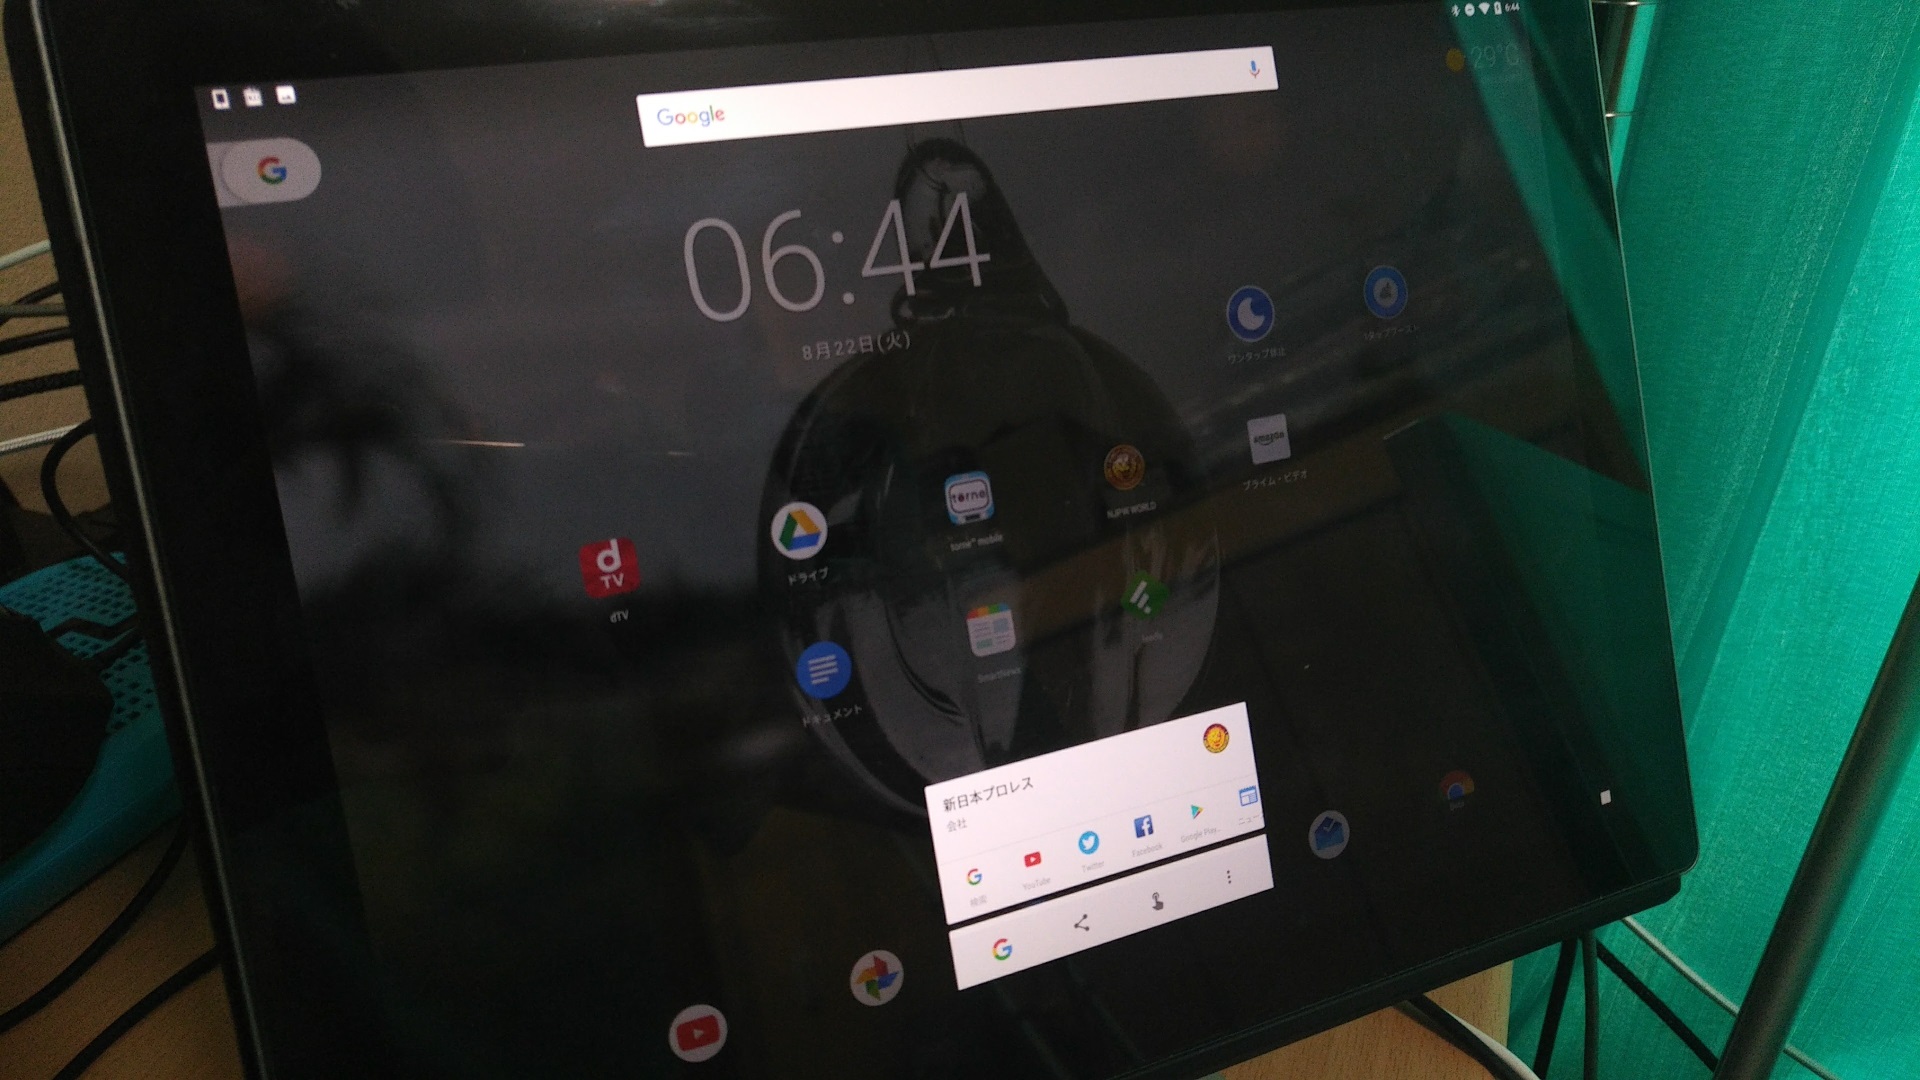 「Android 8.0 Oreo」でもタブレットでは「Google アシスタント」が利用できず【レポート】